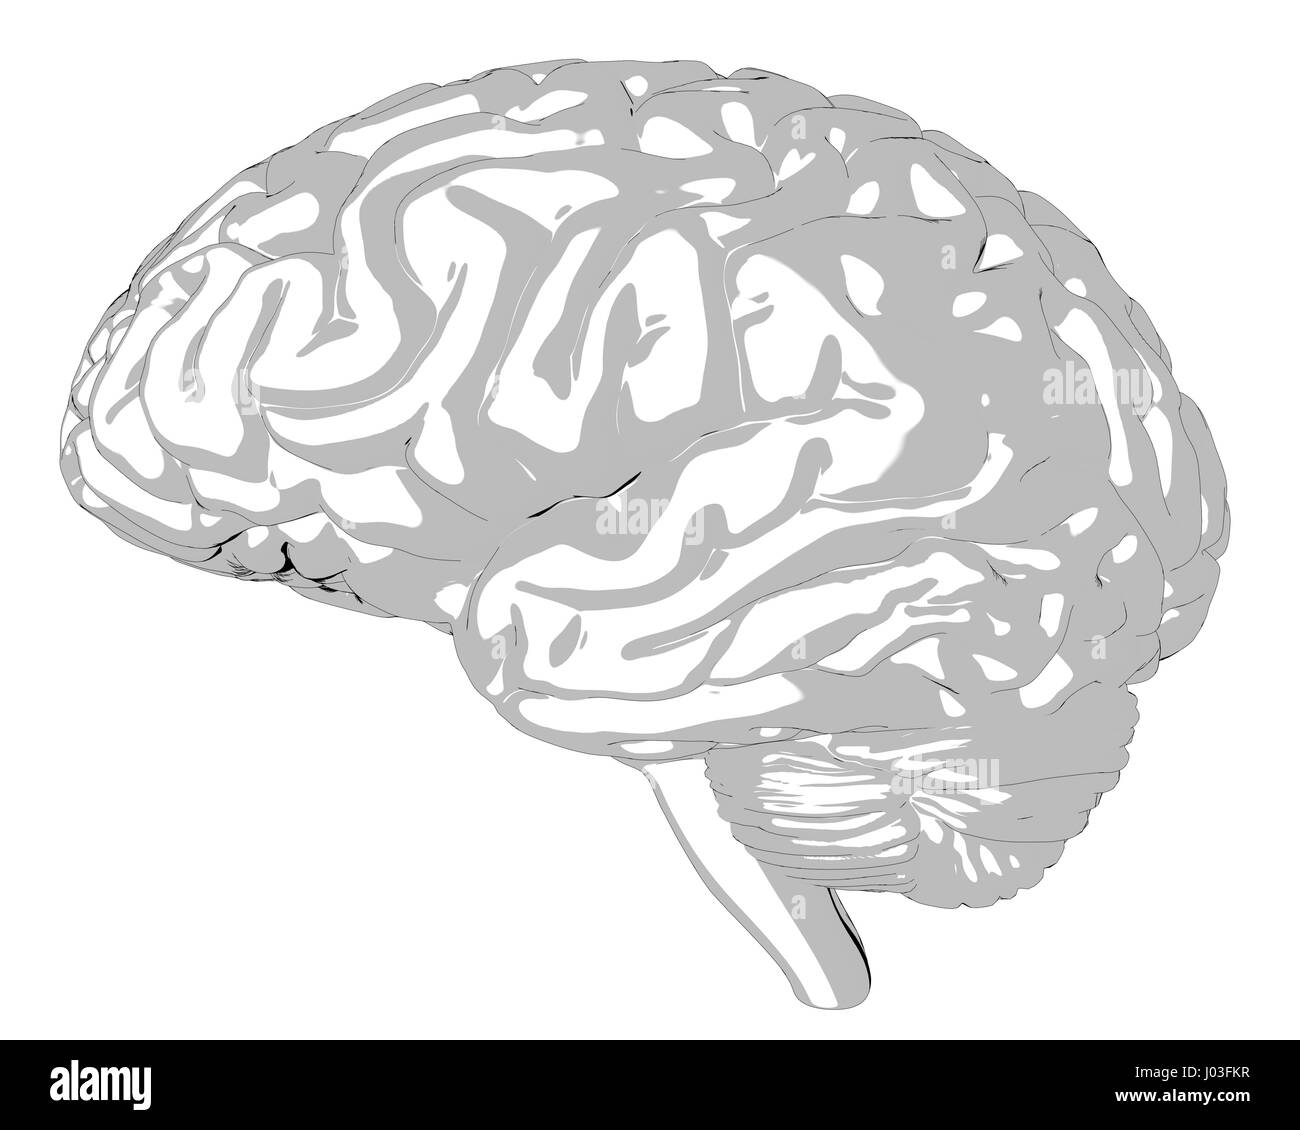 Rendu 3D du cerveau humain Banque D'Images